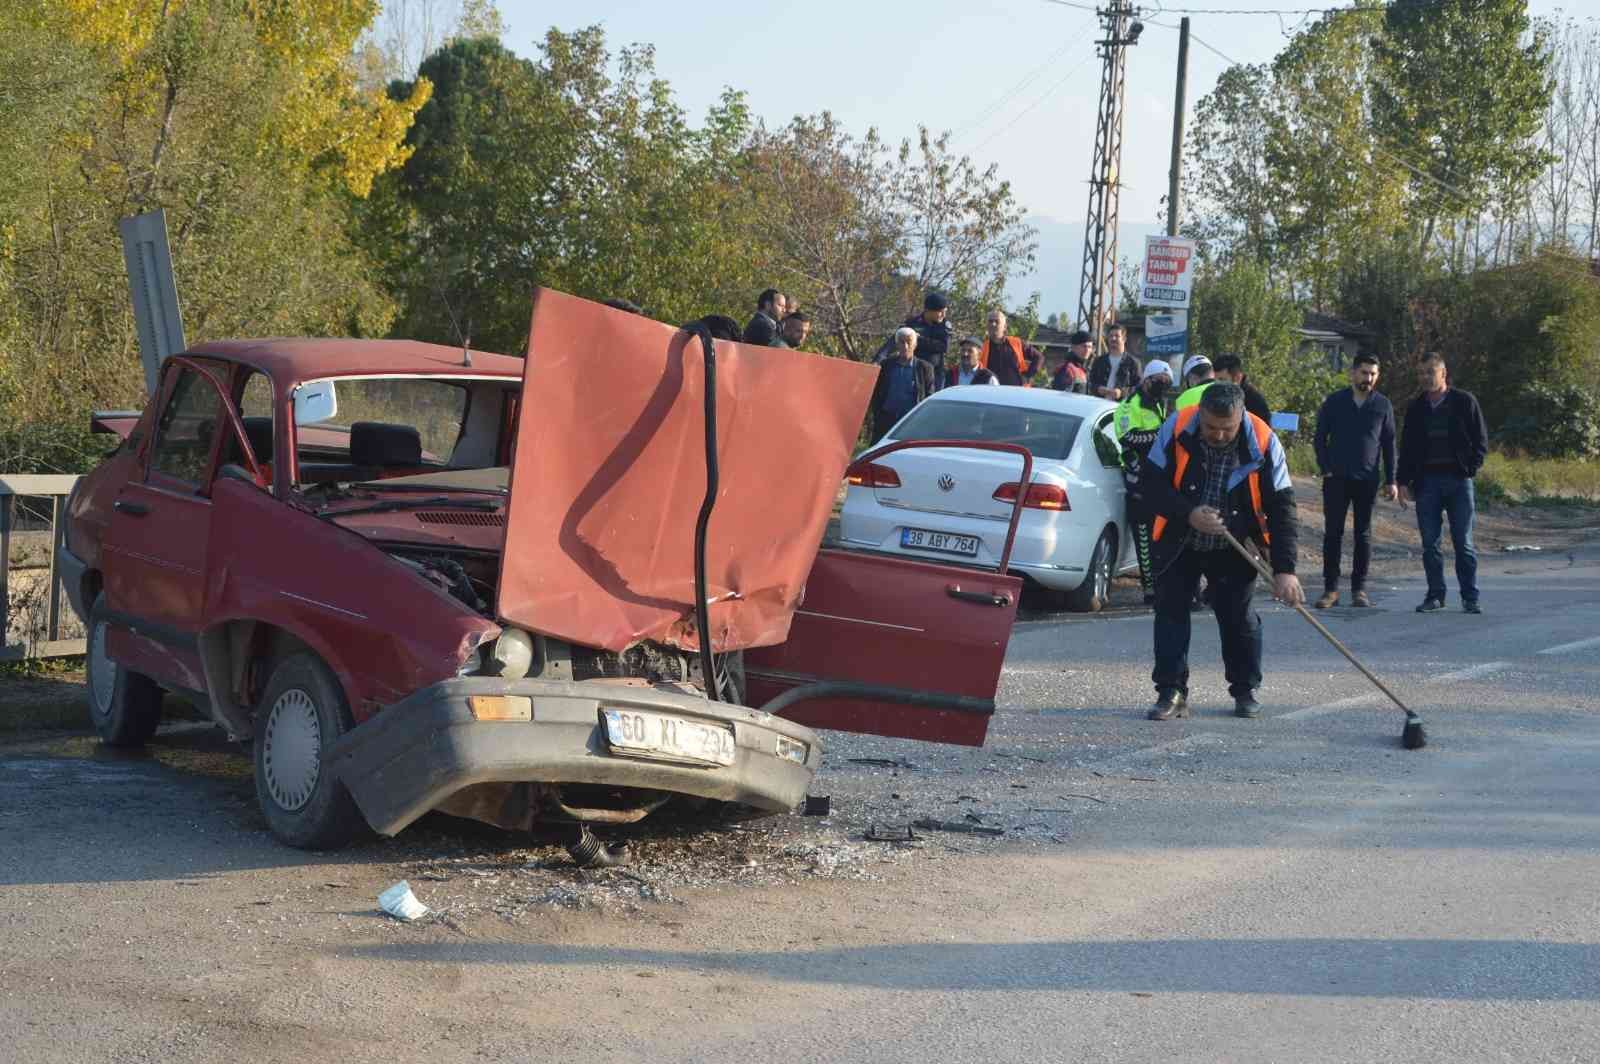 Tokat’ta iki otomobil çarpıştı: 5 yaralı #tokat